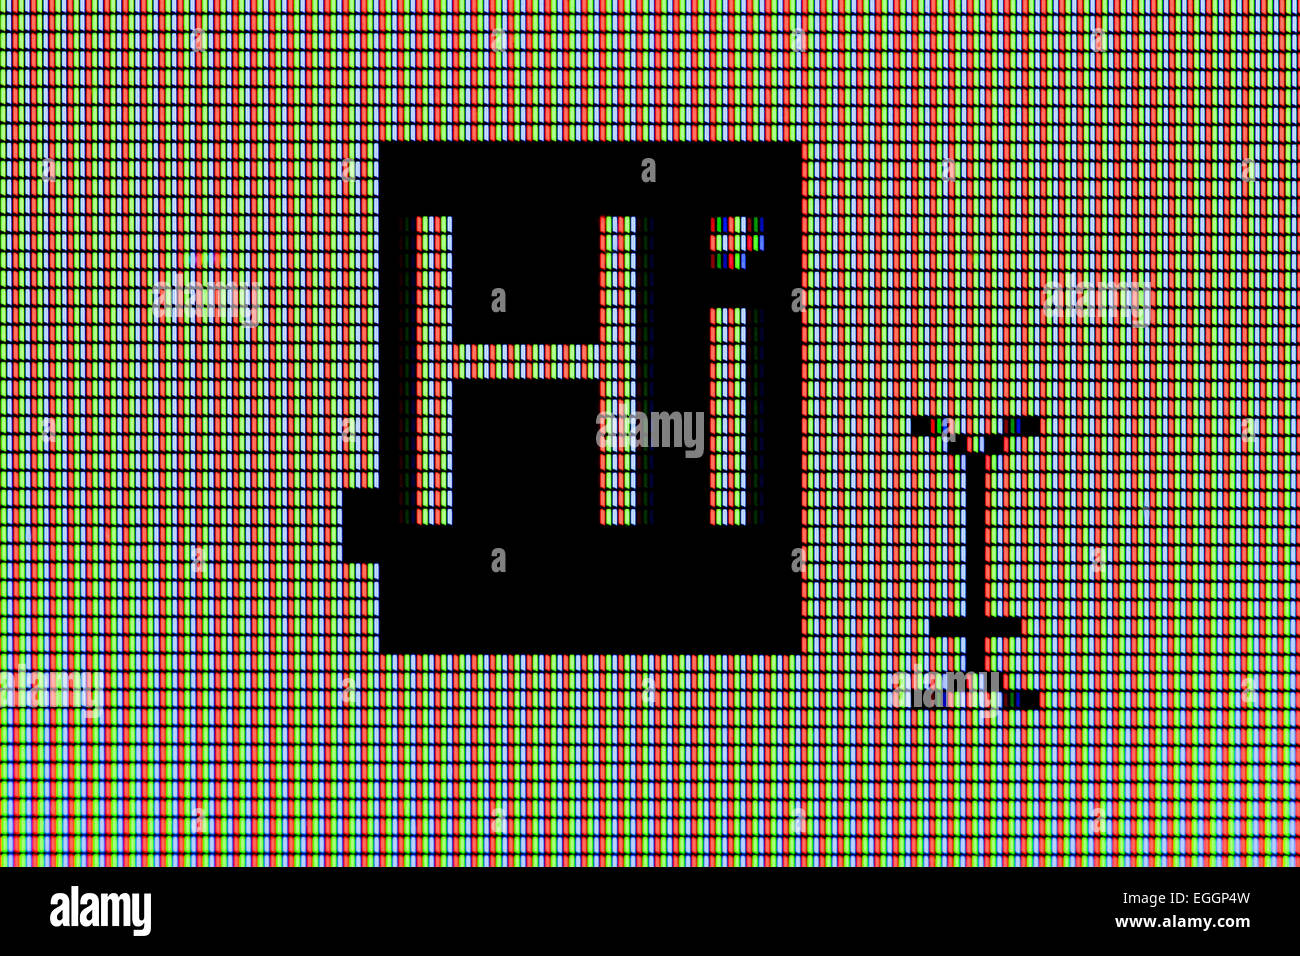 Gros plan du mot 'Hi' sur l'écran de l'ordinateur à écran LCD Banque D'Images